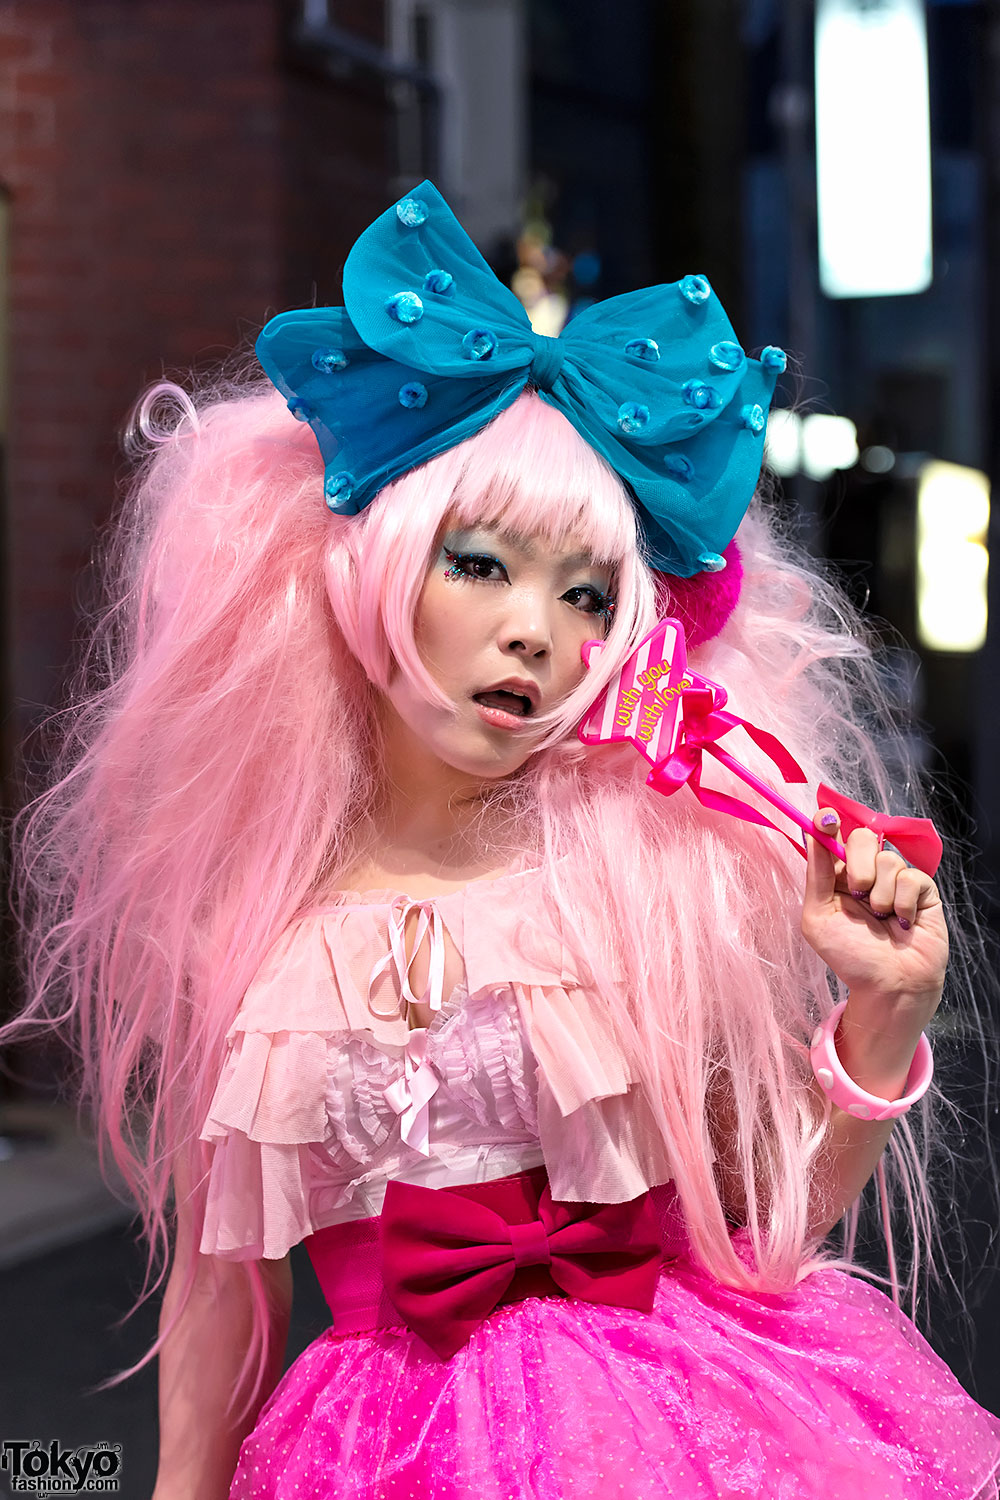 Pink Hair, Big Hair Bow & Magic Wand in Harajuku – Tokyo Fashion